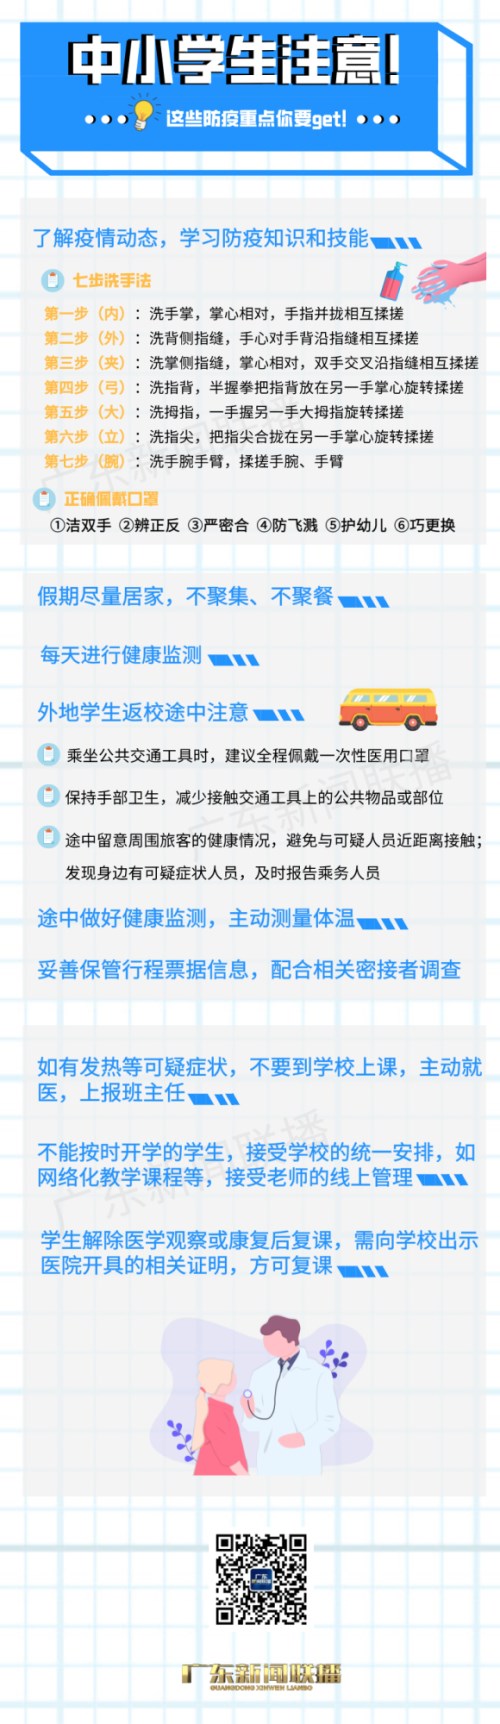 2021年秋季开学将至 广东省新冠肺炎疫情防控指挥办发布开学防疫指南